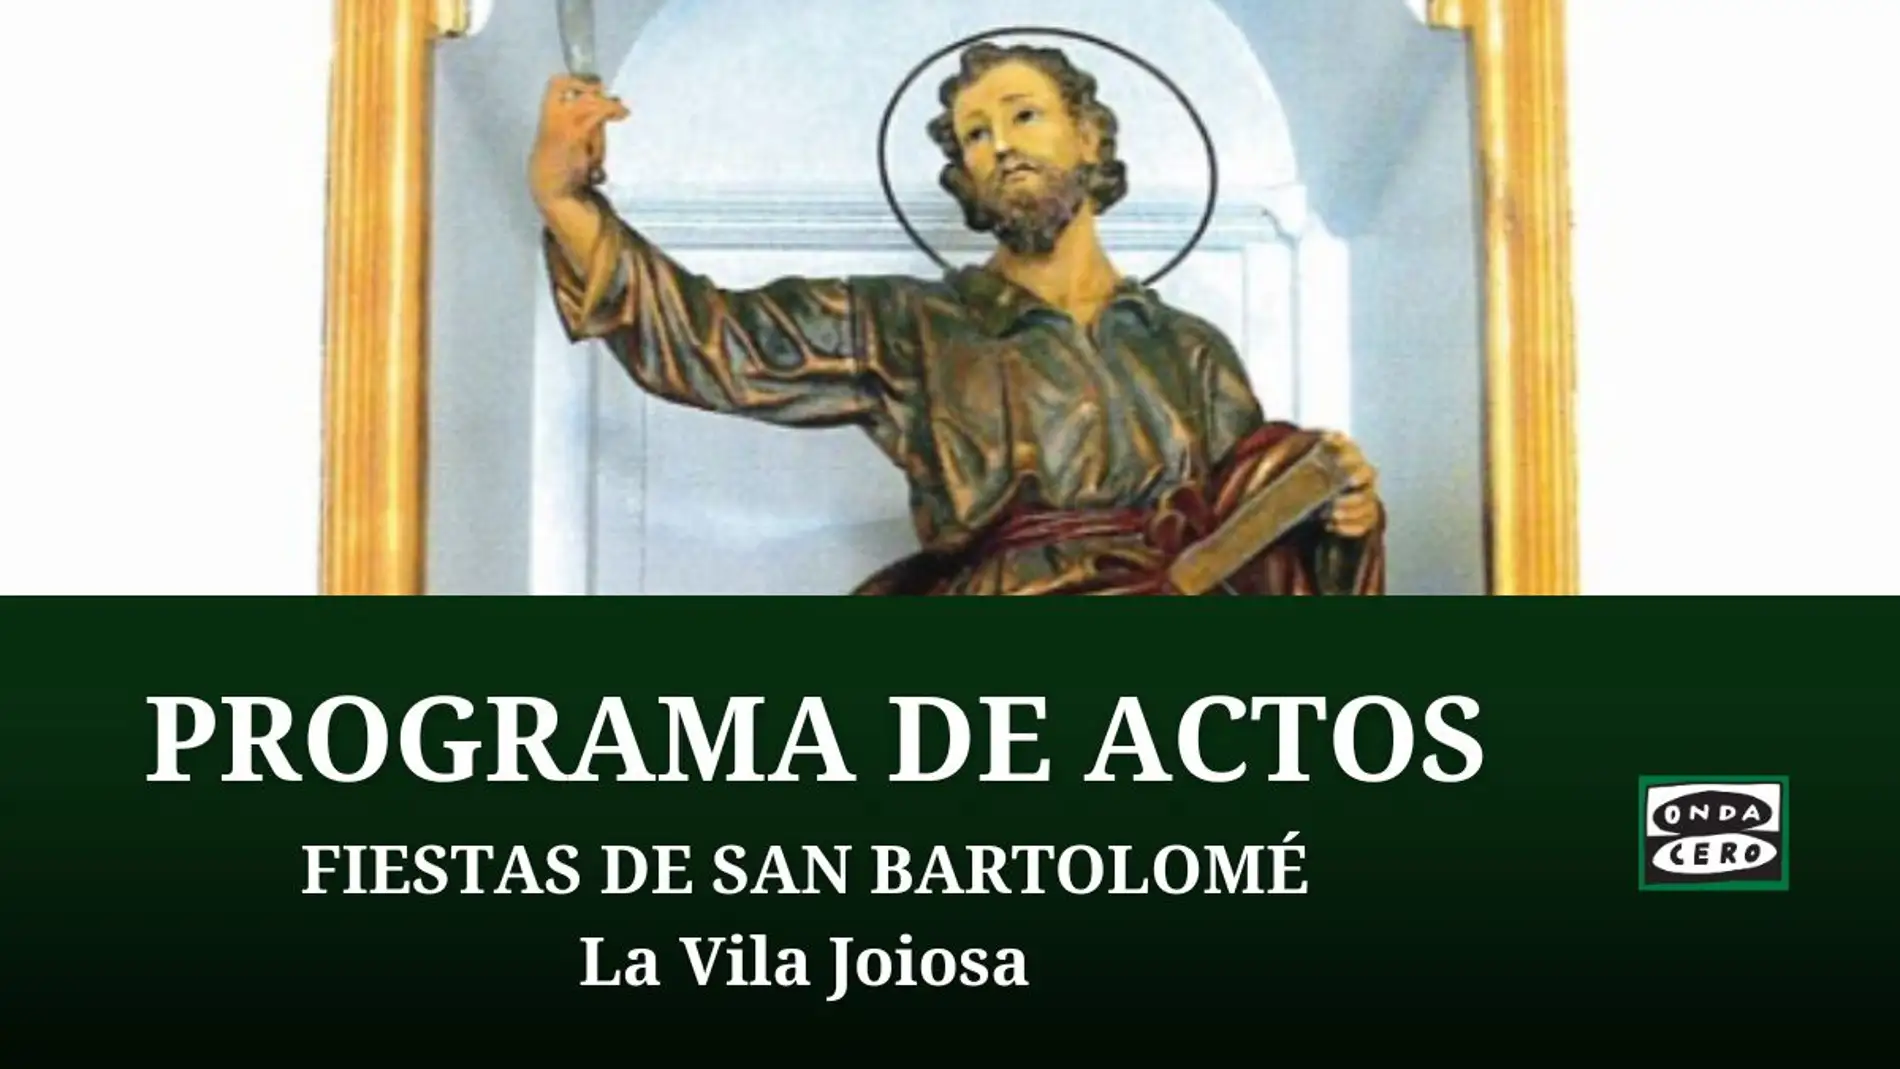 Programación de las fiestas de San Bartolomé en Villajoyosa